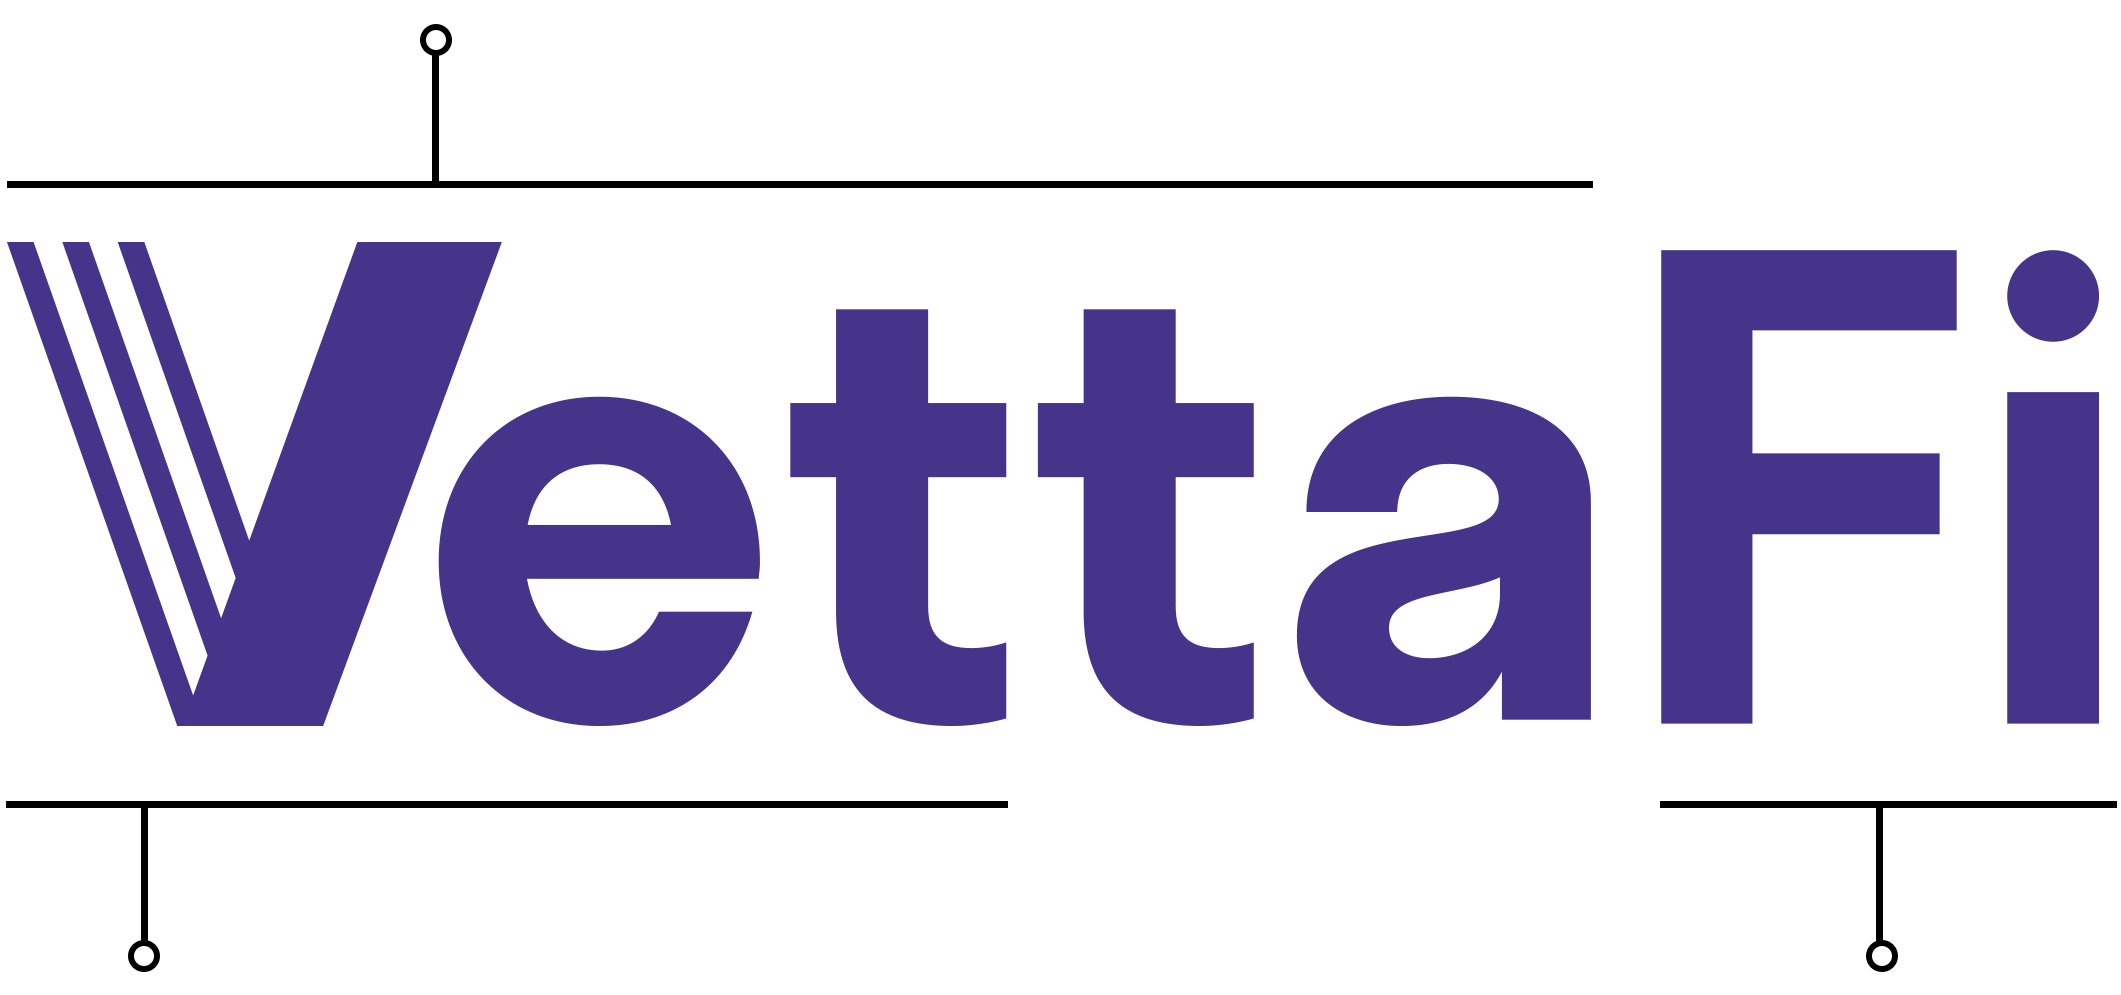 Vettafi meaning